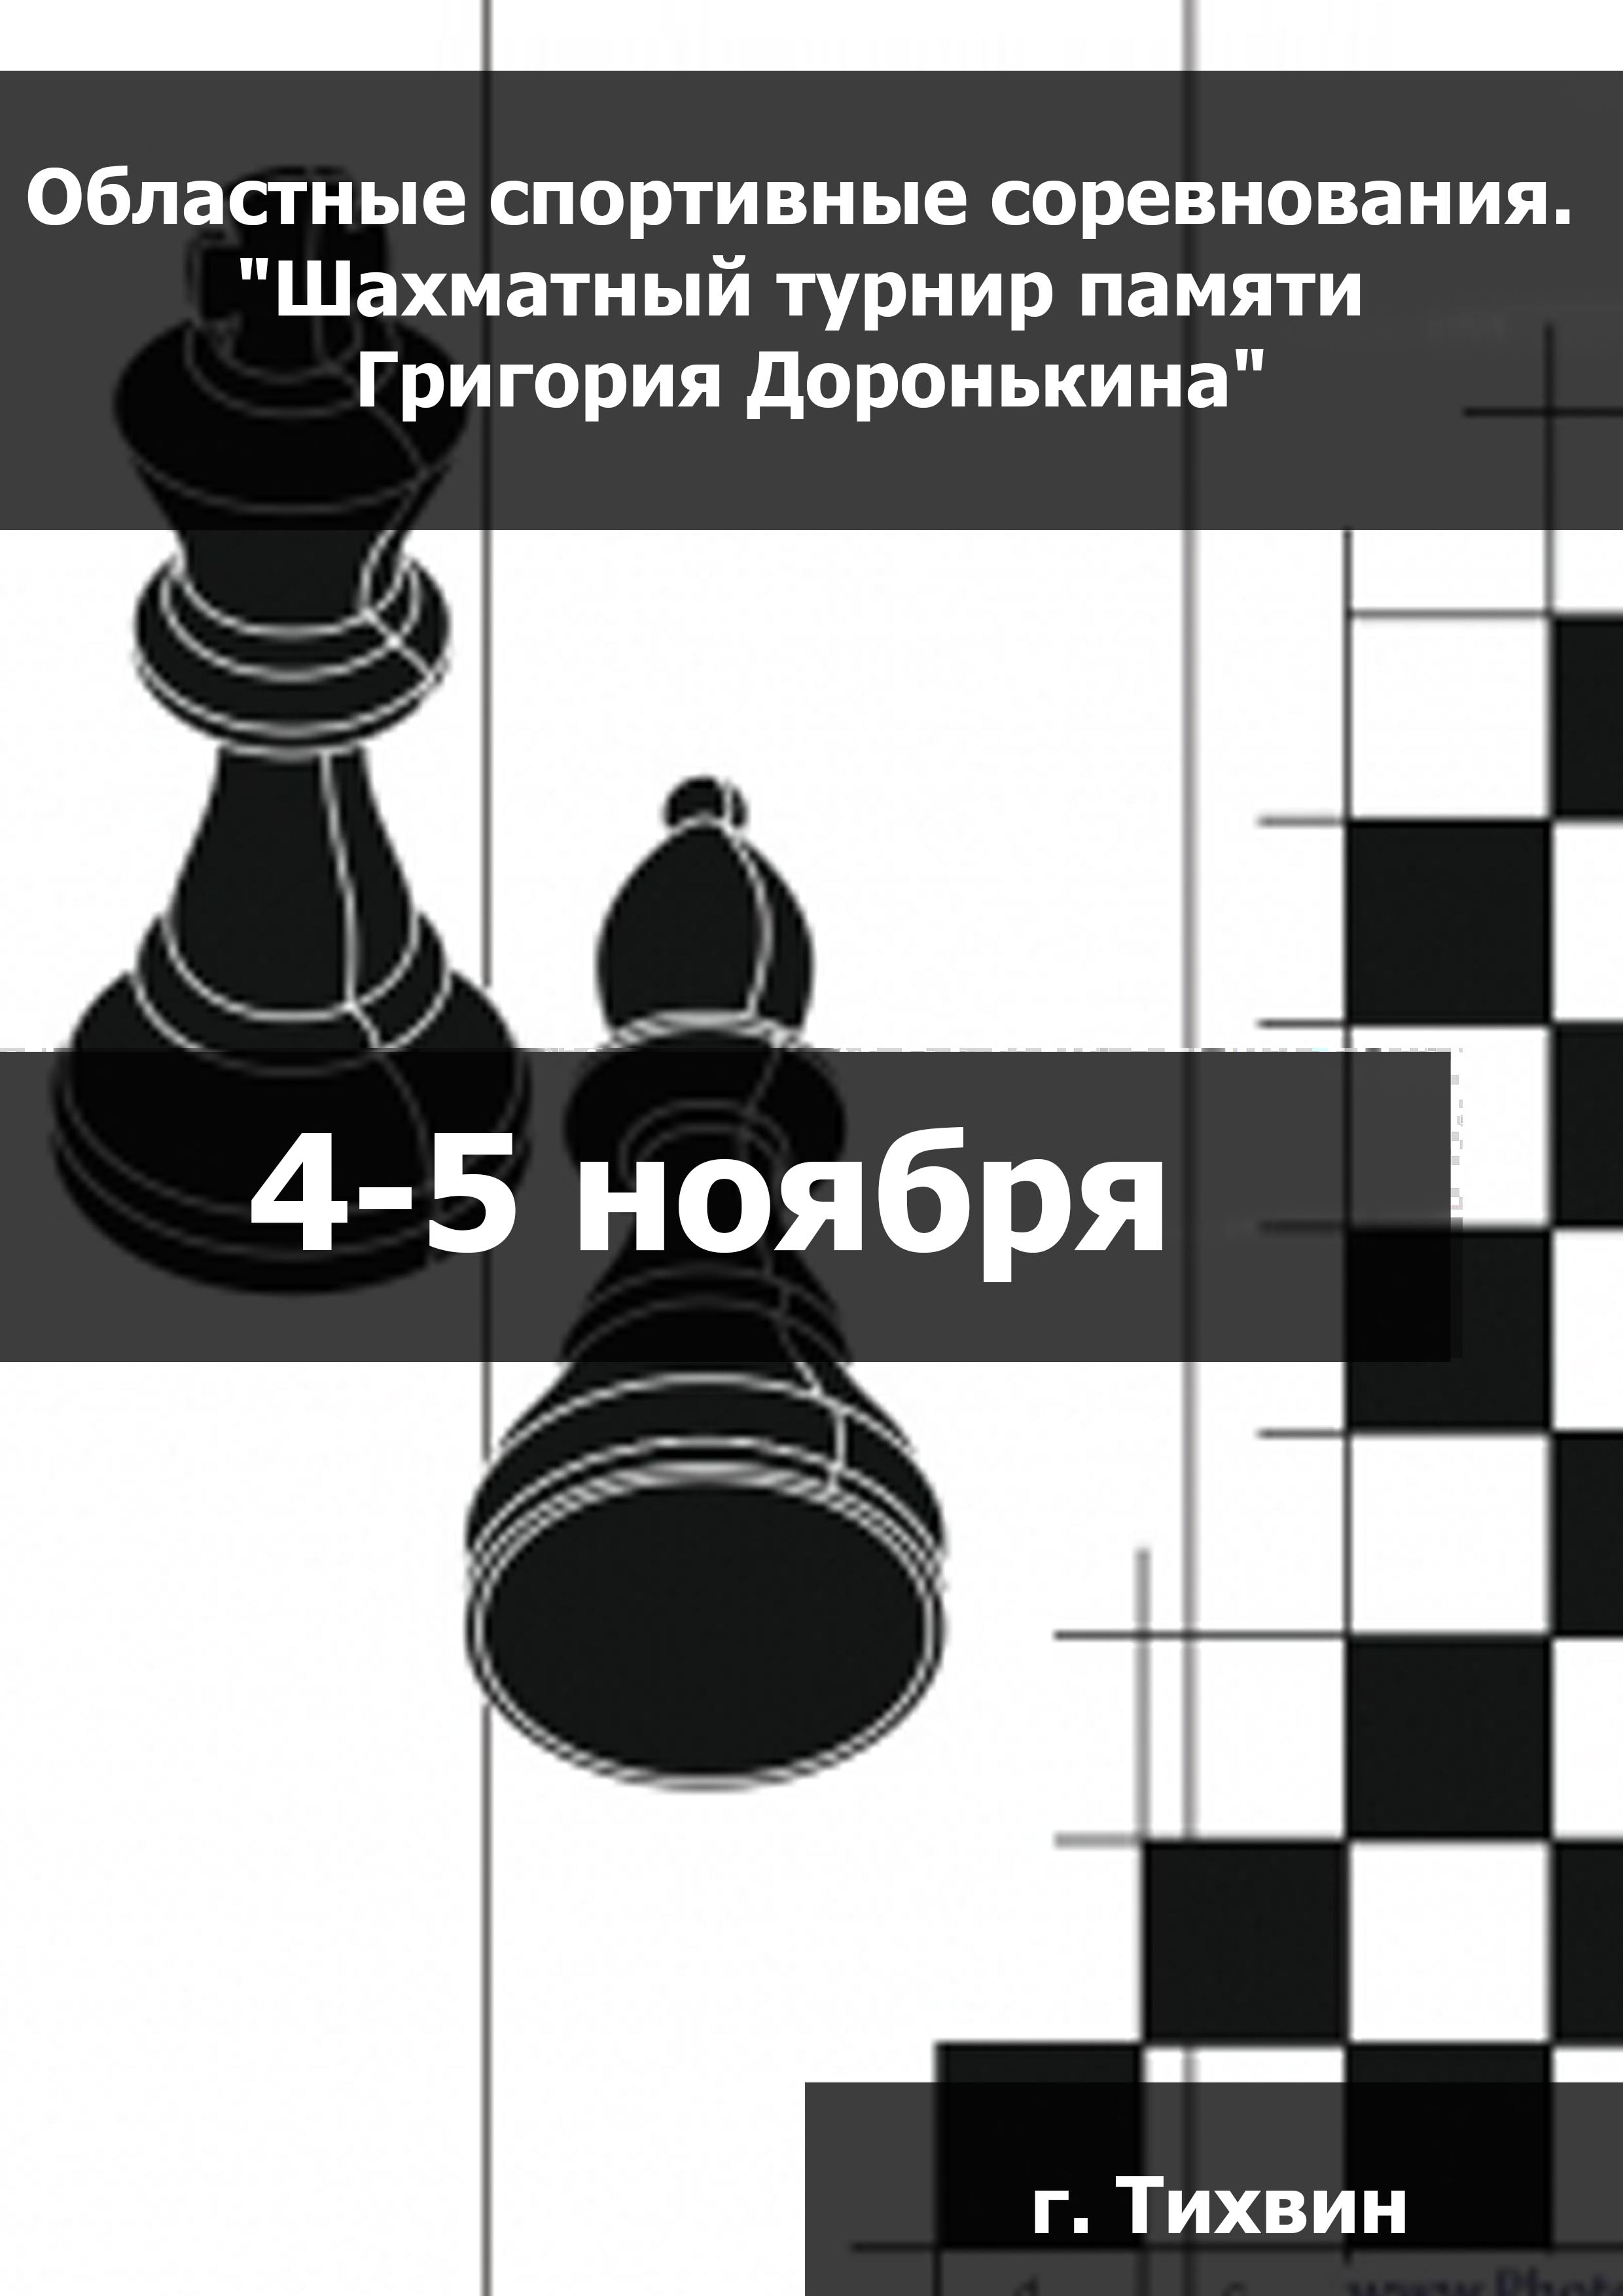 Областные спортивные соревнования. "Шахматный турнир памяти Григория Доронькина" 4  ខែវិច្ឆិការបស់
 2023  នៅឆ្នាំ
 